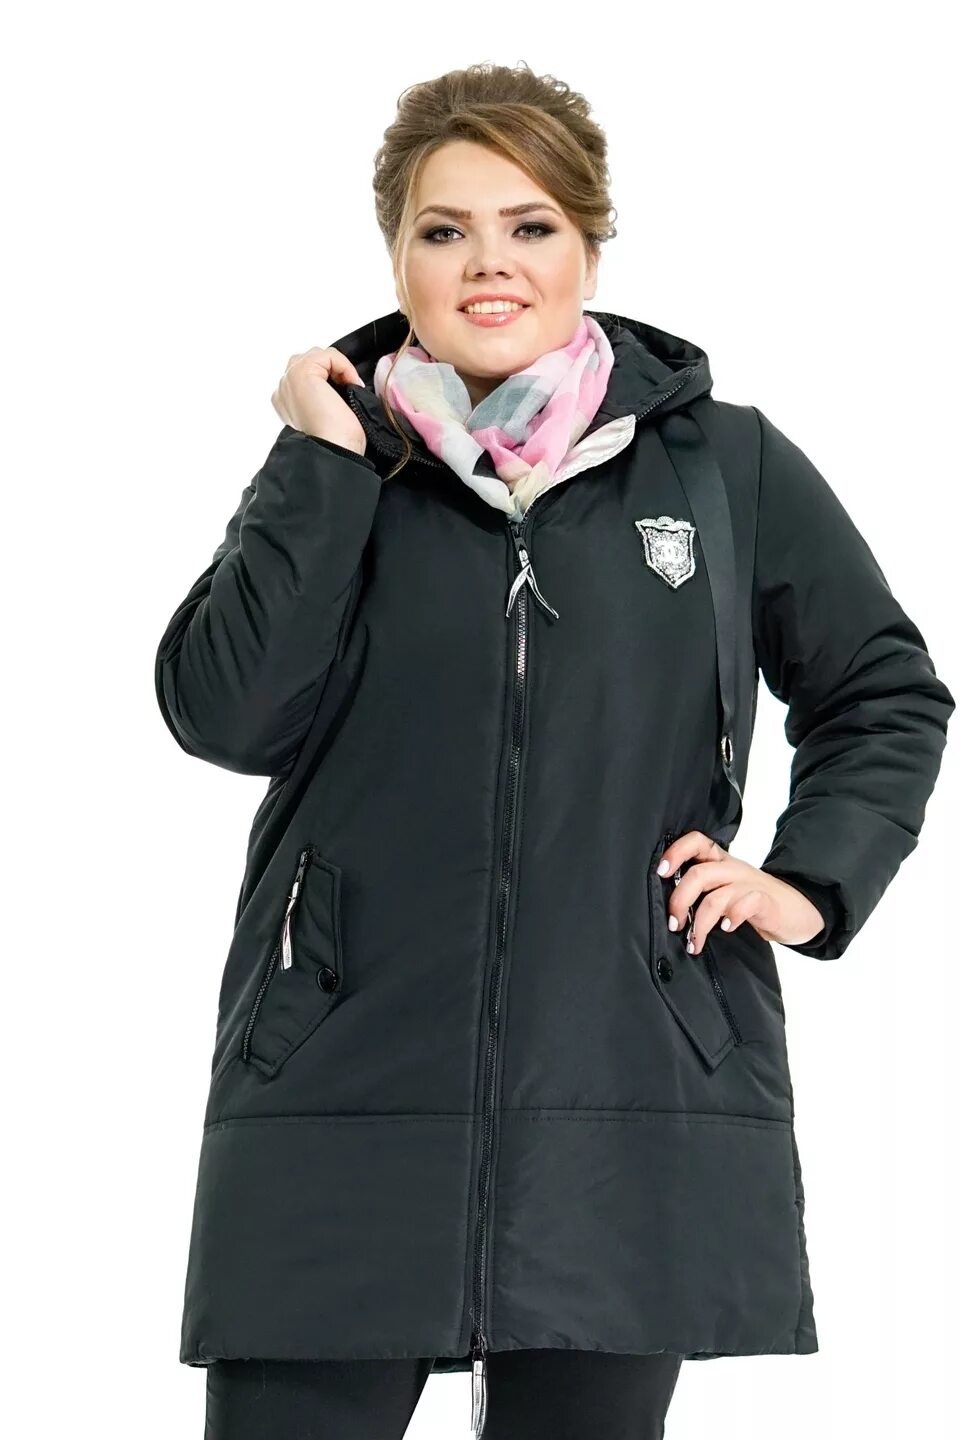 Куртка Санса валберис. Mishel утепленная куртка 56 размер. Зимняя куртка женская валберис 60 размер. Зимние куртки женские больших размеров.